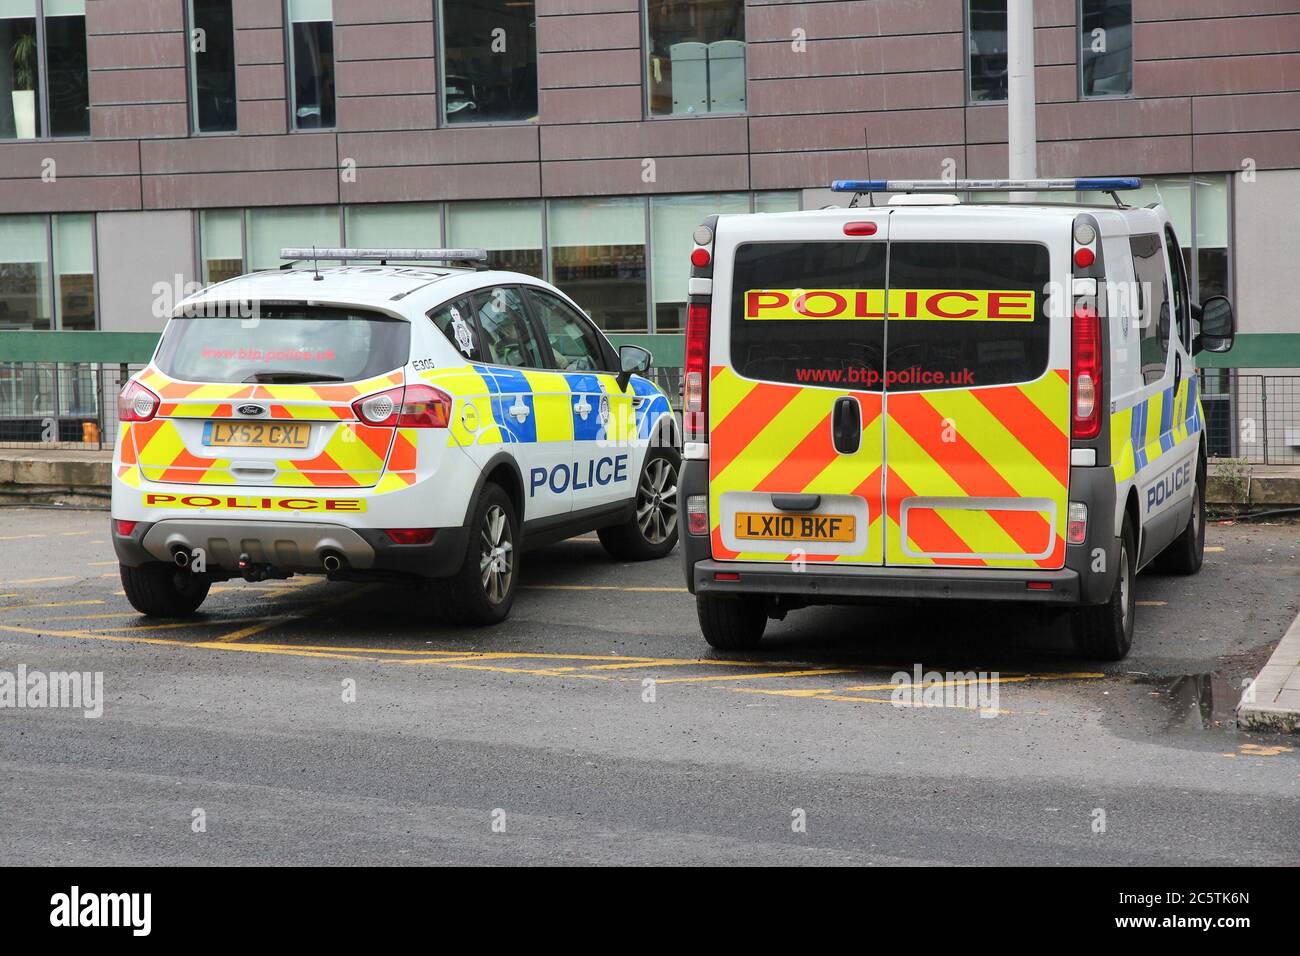 MANCHESTER, Royaume-Uni - 23 AVRIL 2013 : véhicules de police britanniques garés à Manchester, Royaume-Uni. Les voitures sont Ford Kuga et Renault trafic. Banque D'Images